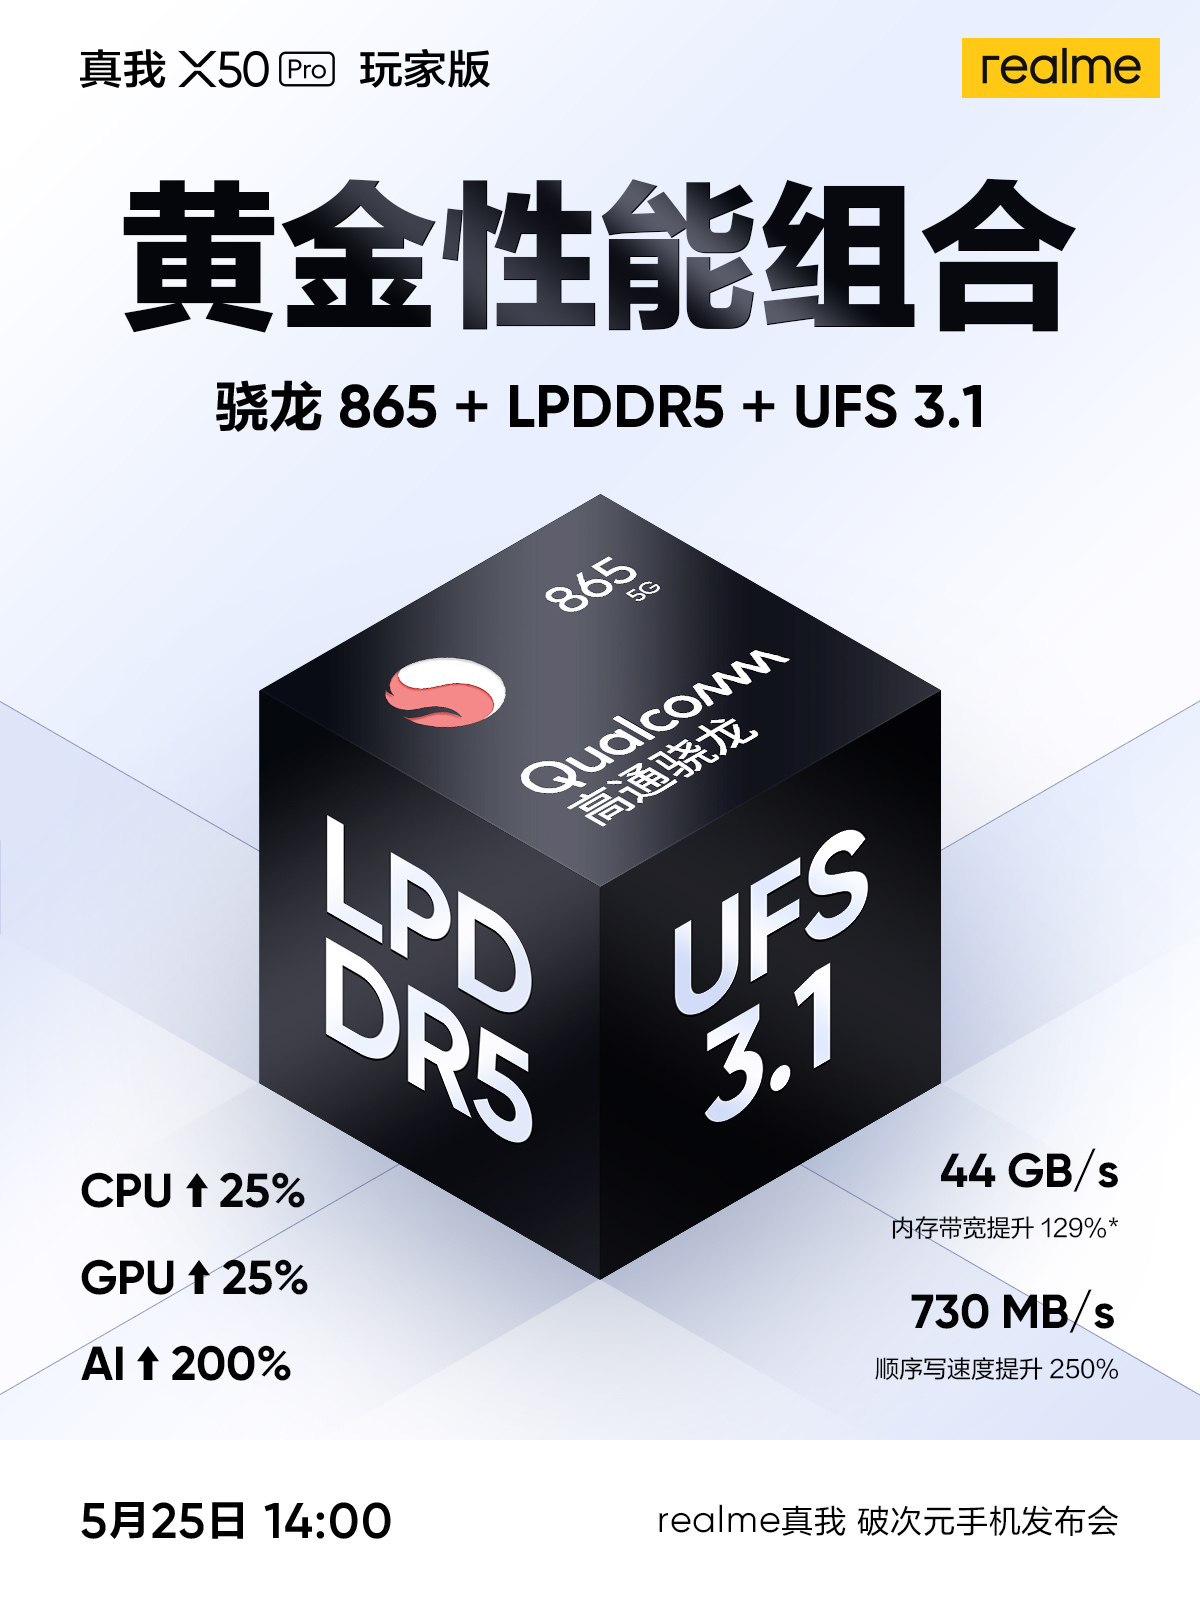 Realme X50 Pro Player UFS 3.1 LPDDR5